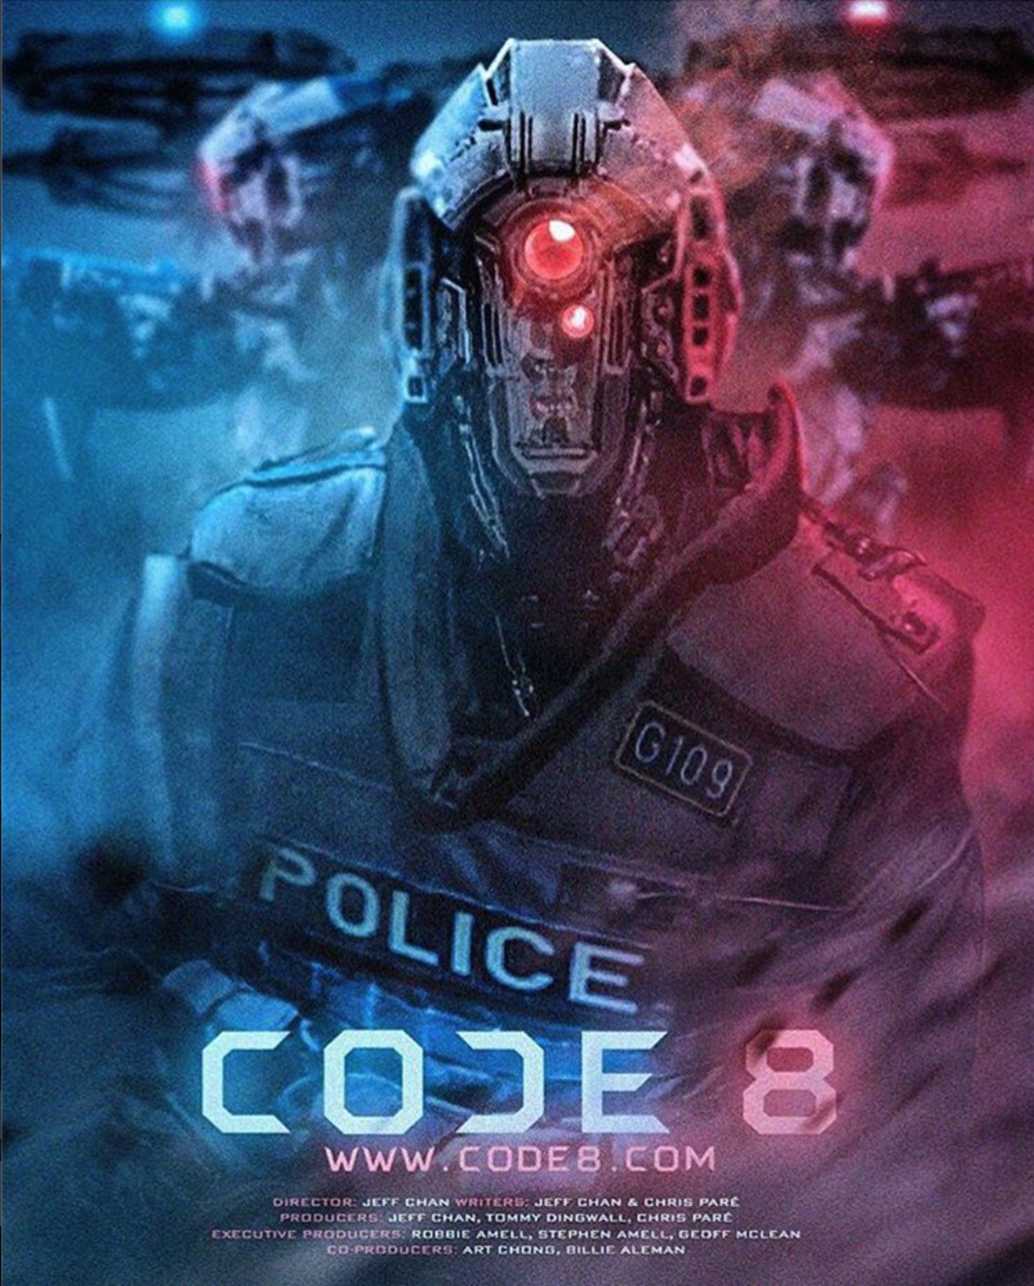 FULL MOVIE: Code 8 (2019)